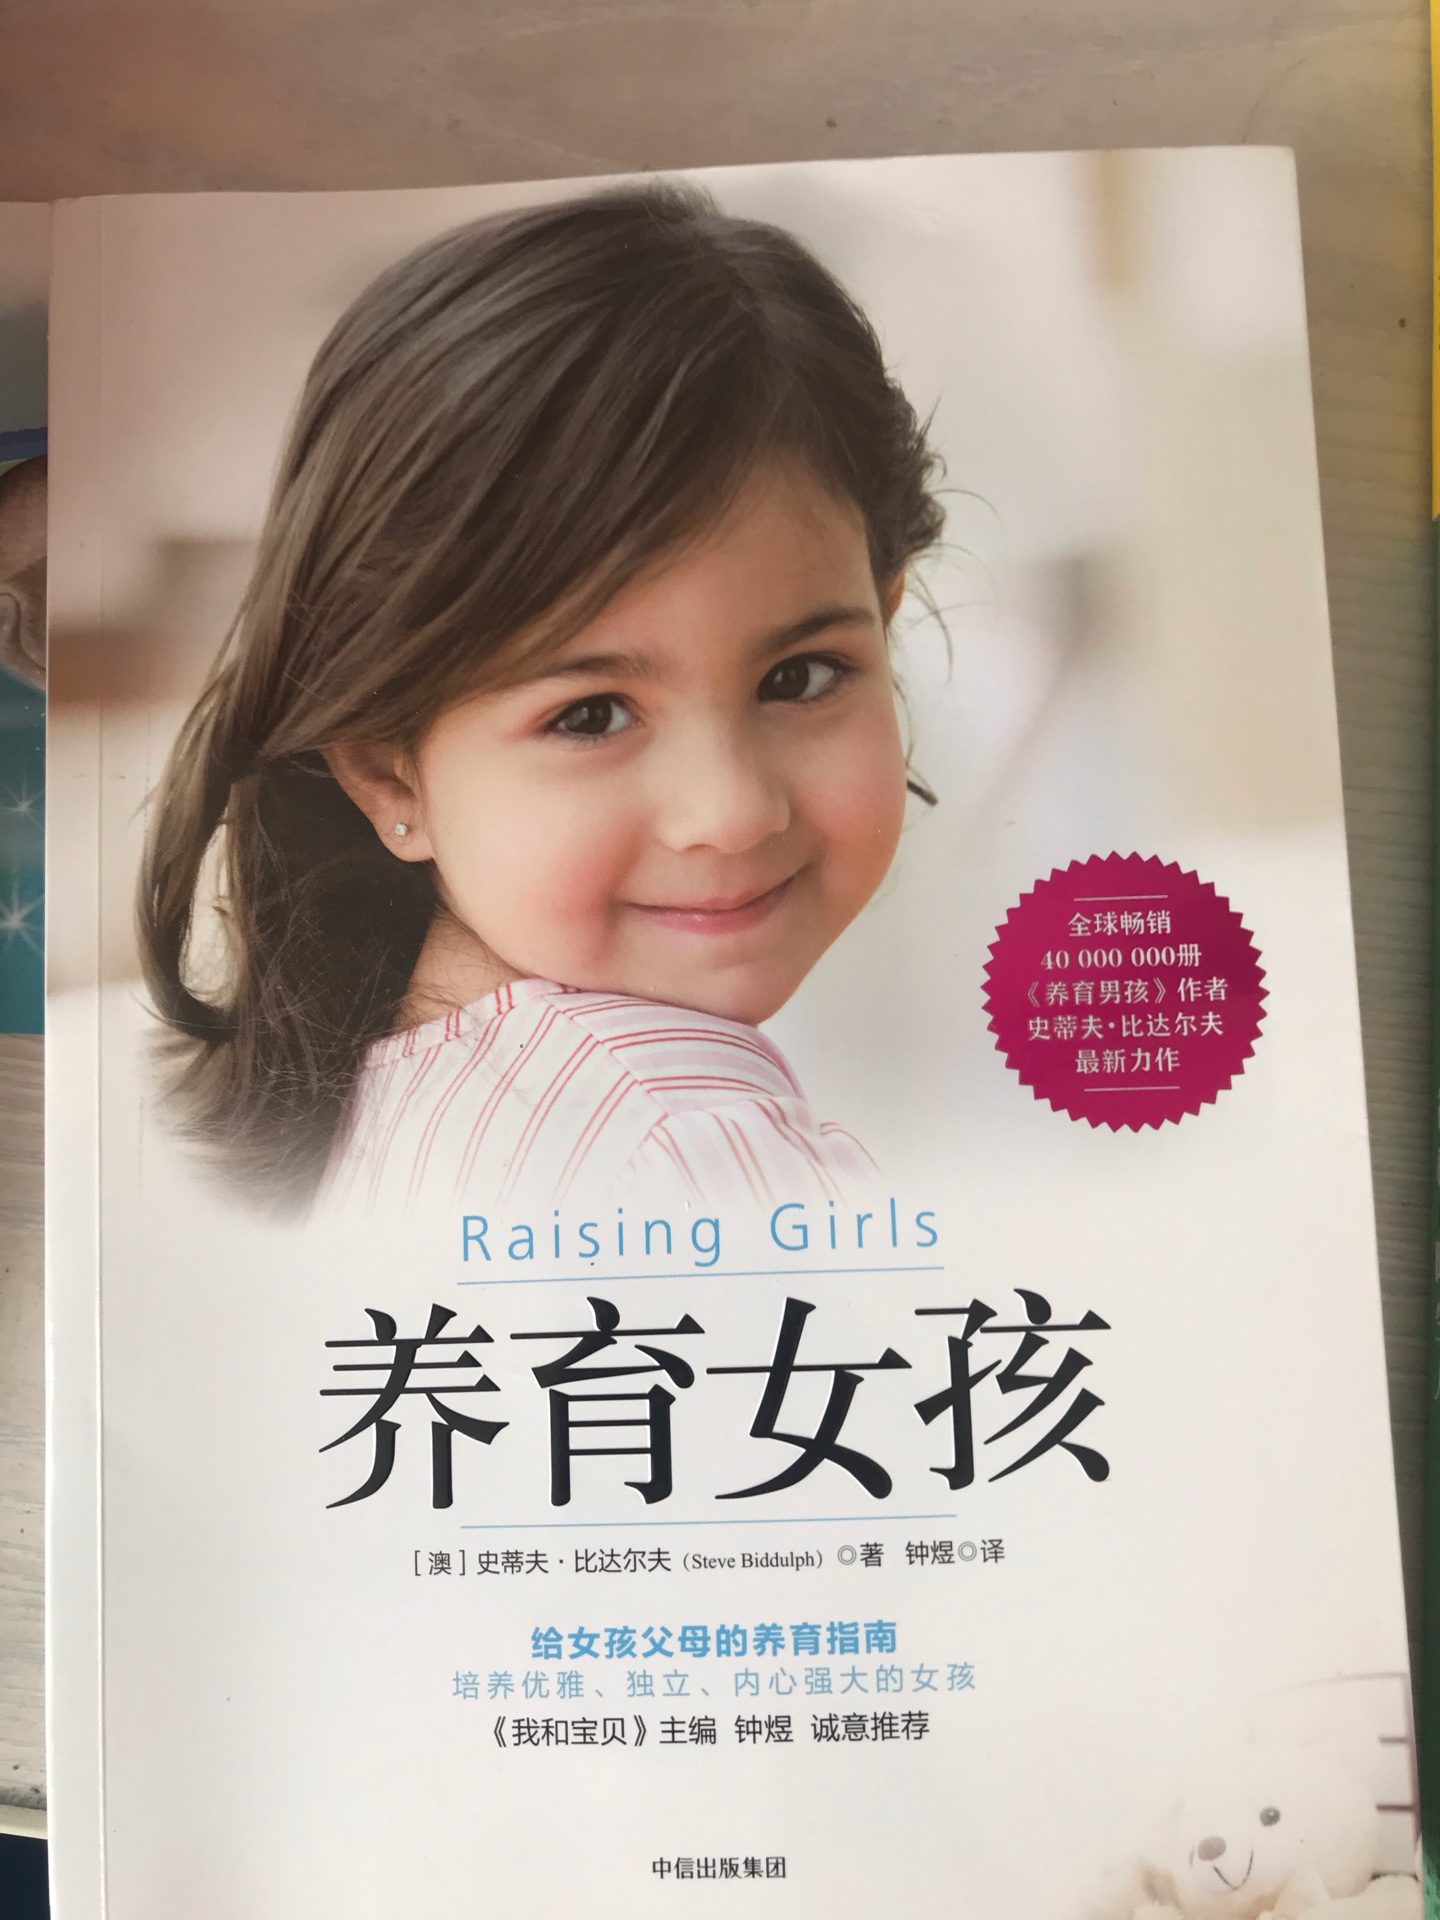 很好的育儿书籍，是听了樊登读书会上推荐的，真心不错，建议家有女儿的可以买来看看，受益匪浅。